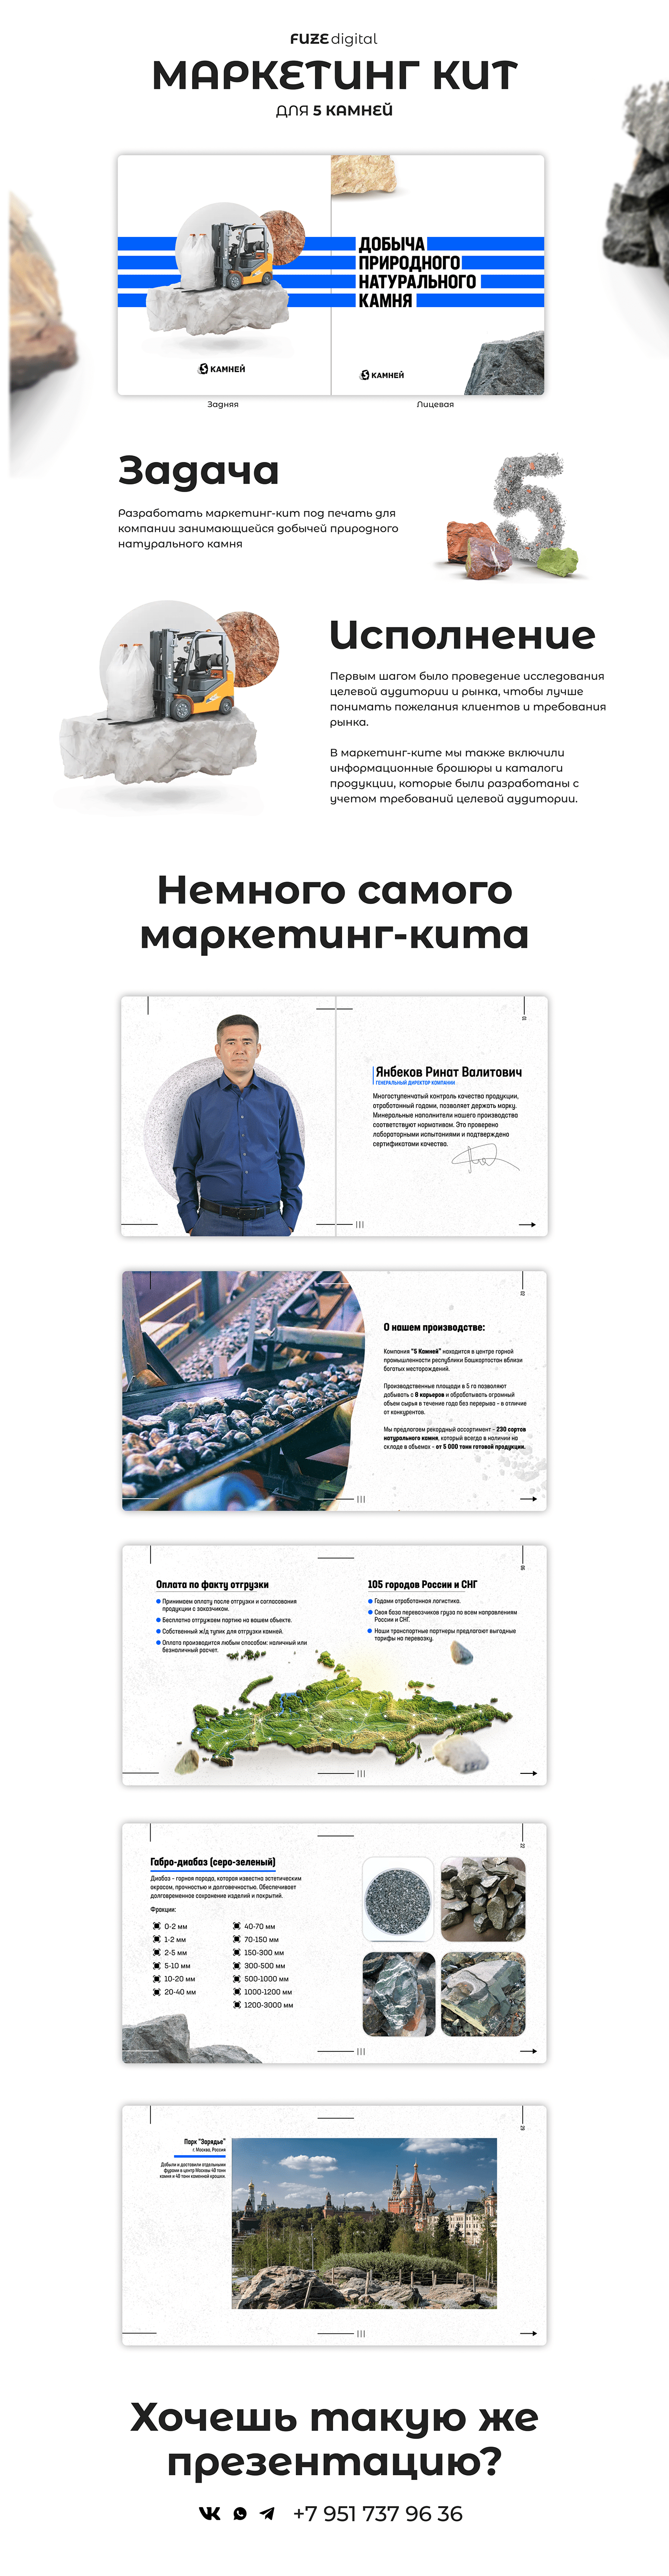 Figma Powerpoint presentation design графический дизайн презентация фирменный стиль полиграфия дизайн